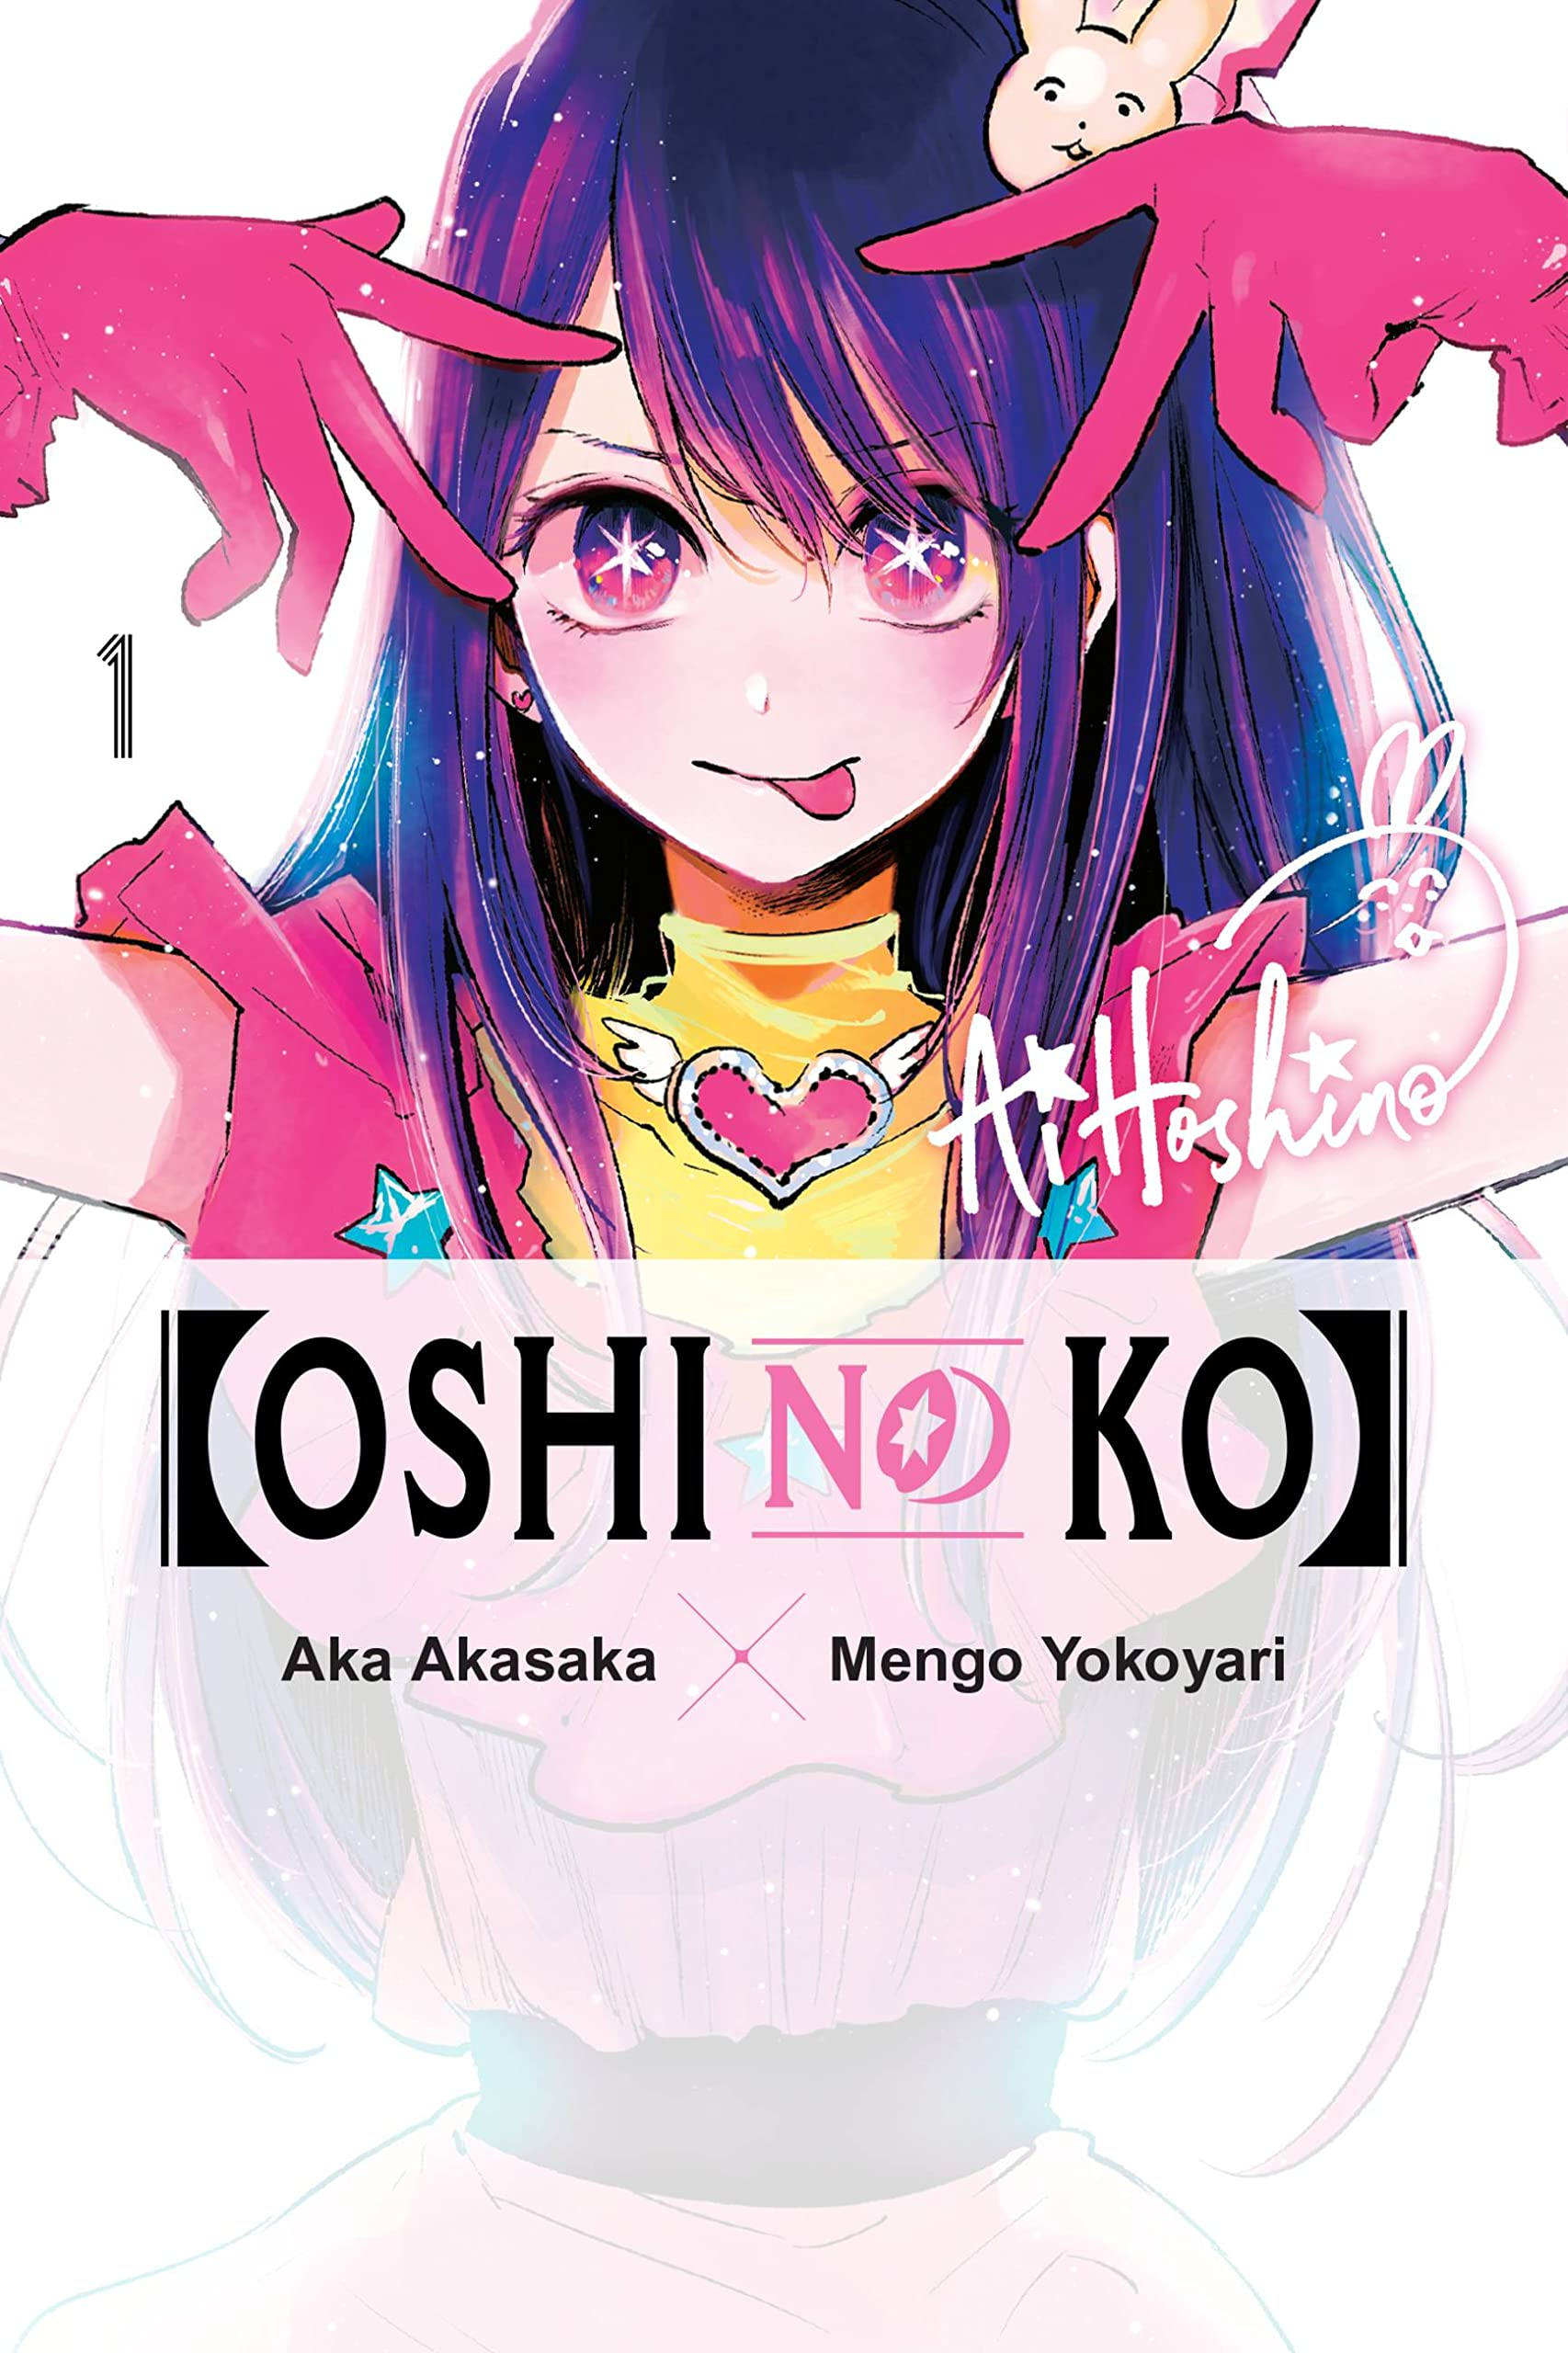 Akane version of the oshi no ko mv : r/OshiNoKo